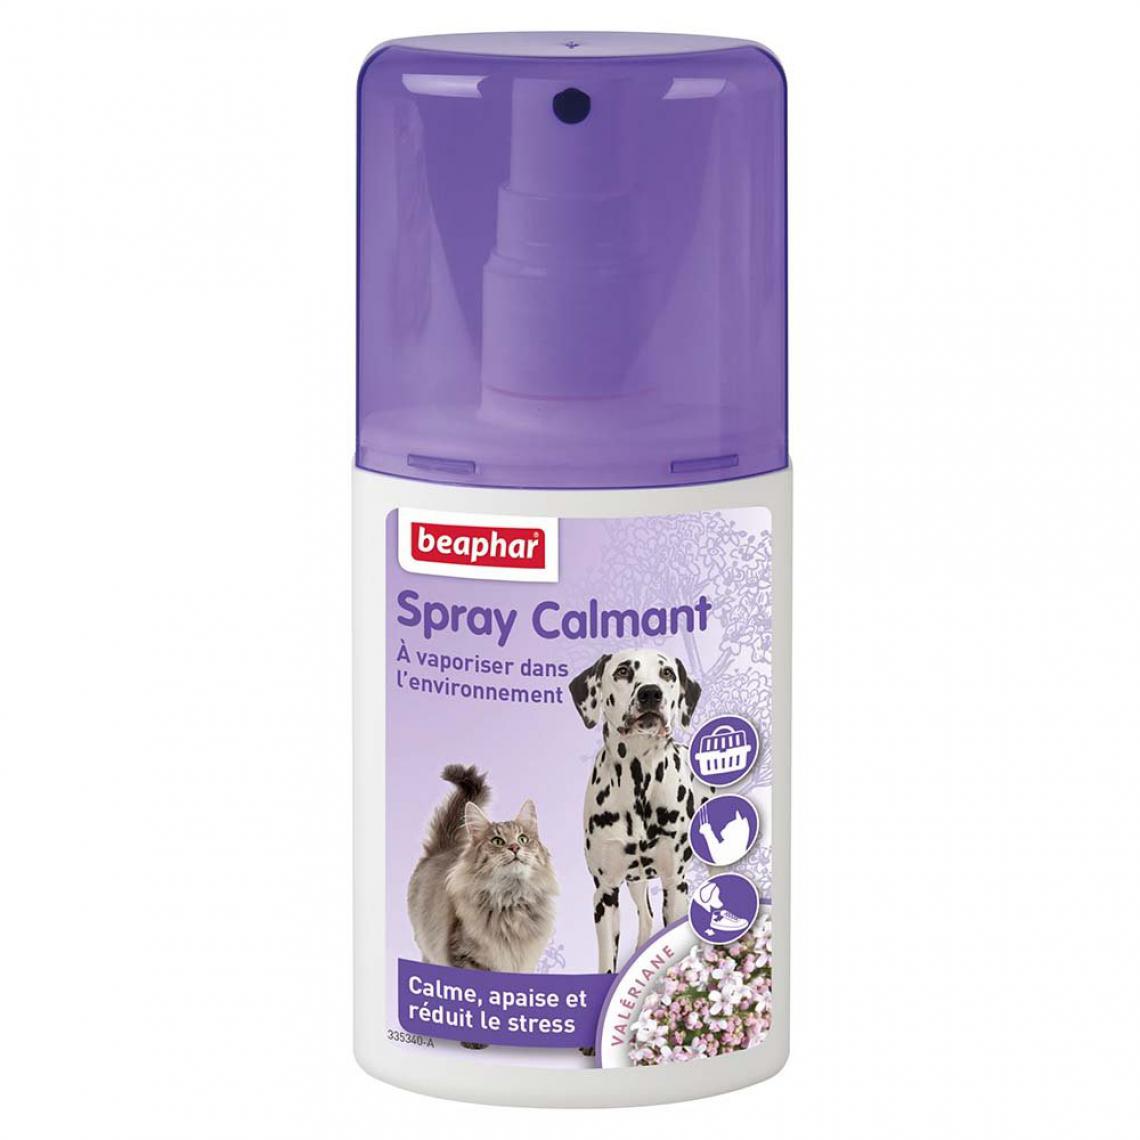 Beaphar - Beaphar - Spray calmant pour chat - 125 ml - Hygiène et soin pour chien